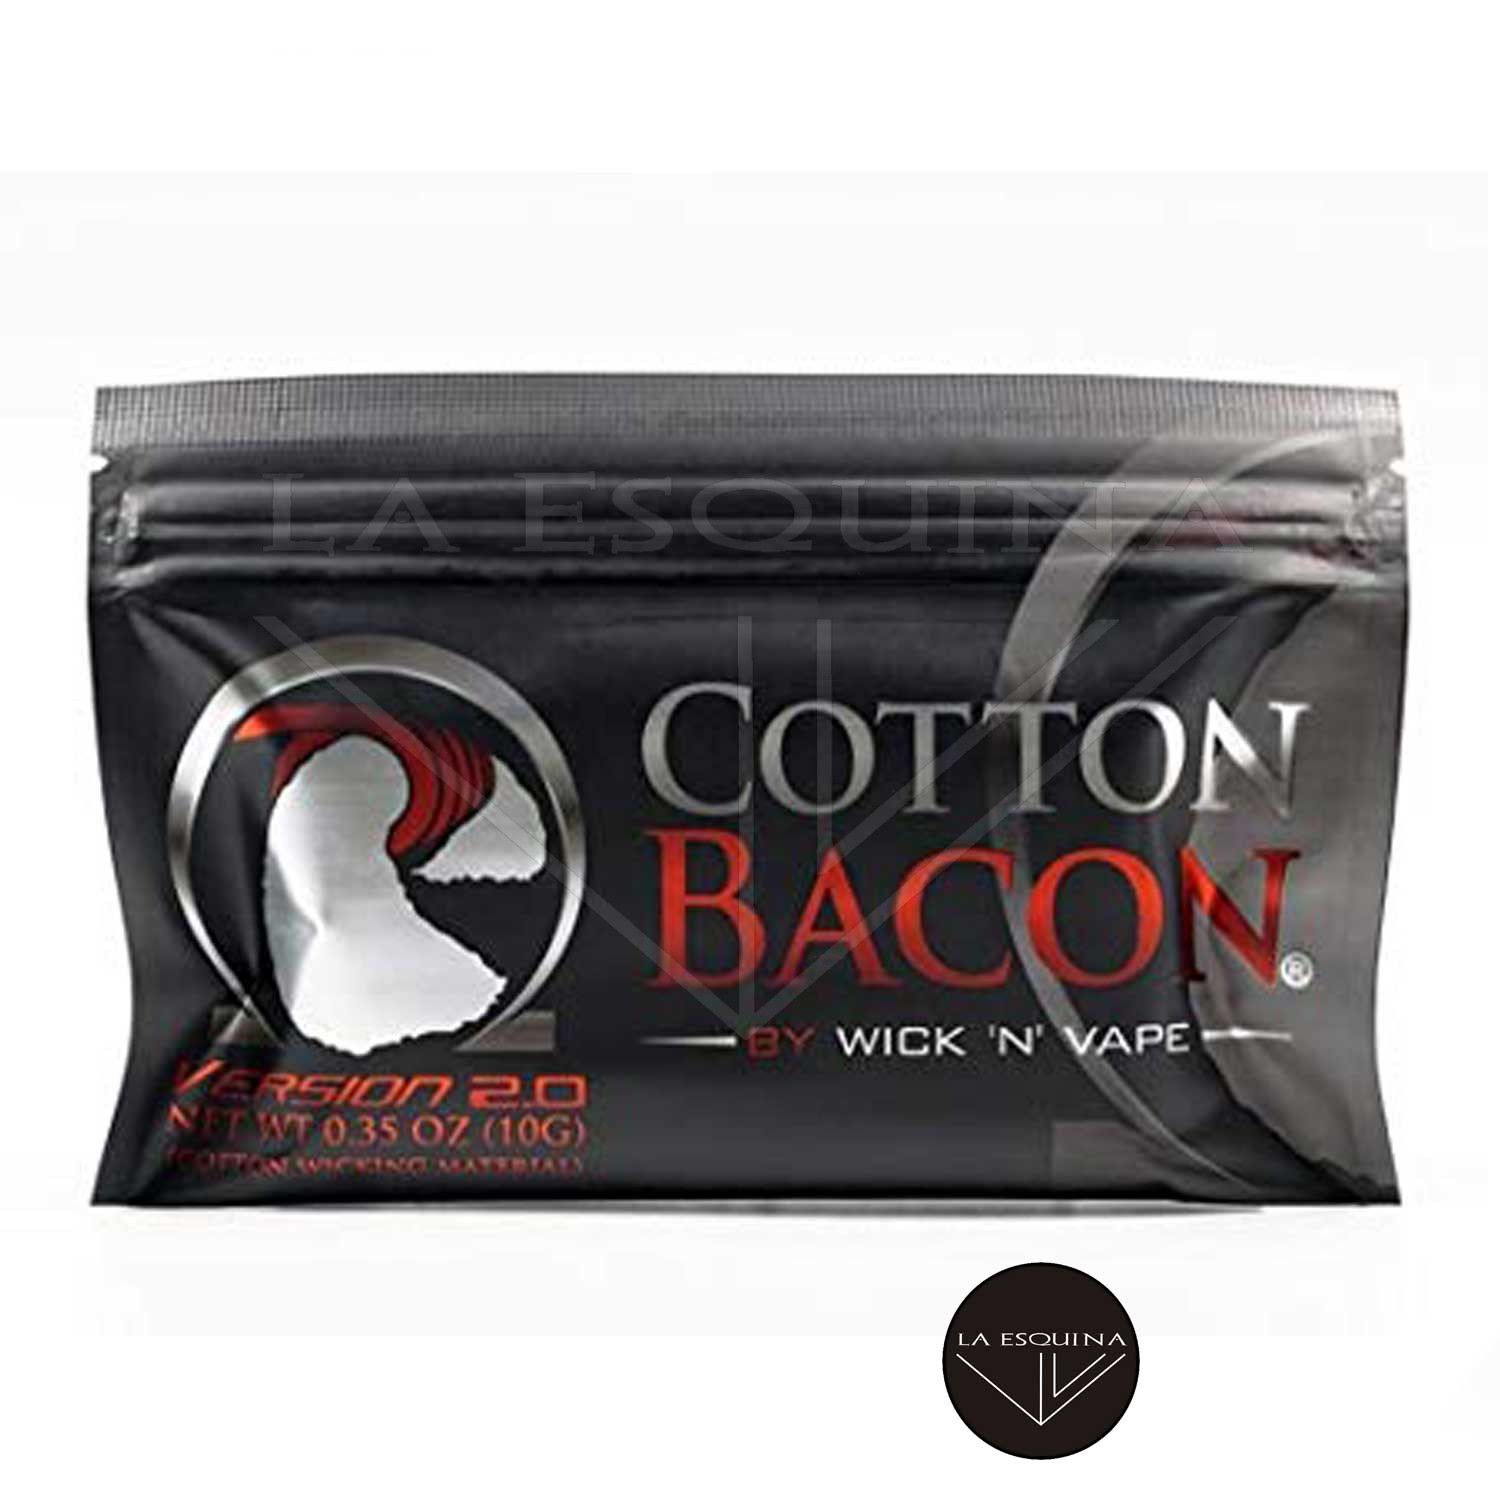 Algodón Cotton Bacon v2 WICK ‘N’ VAPE